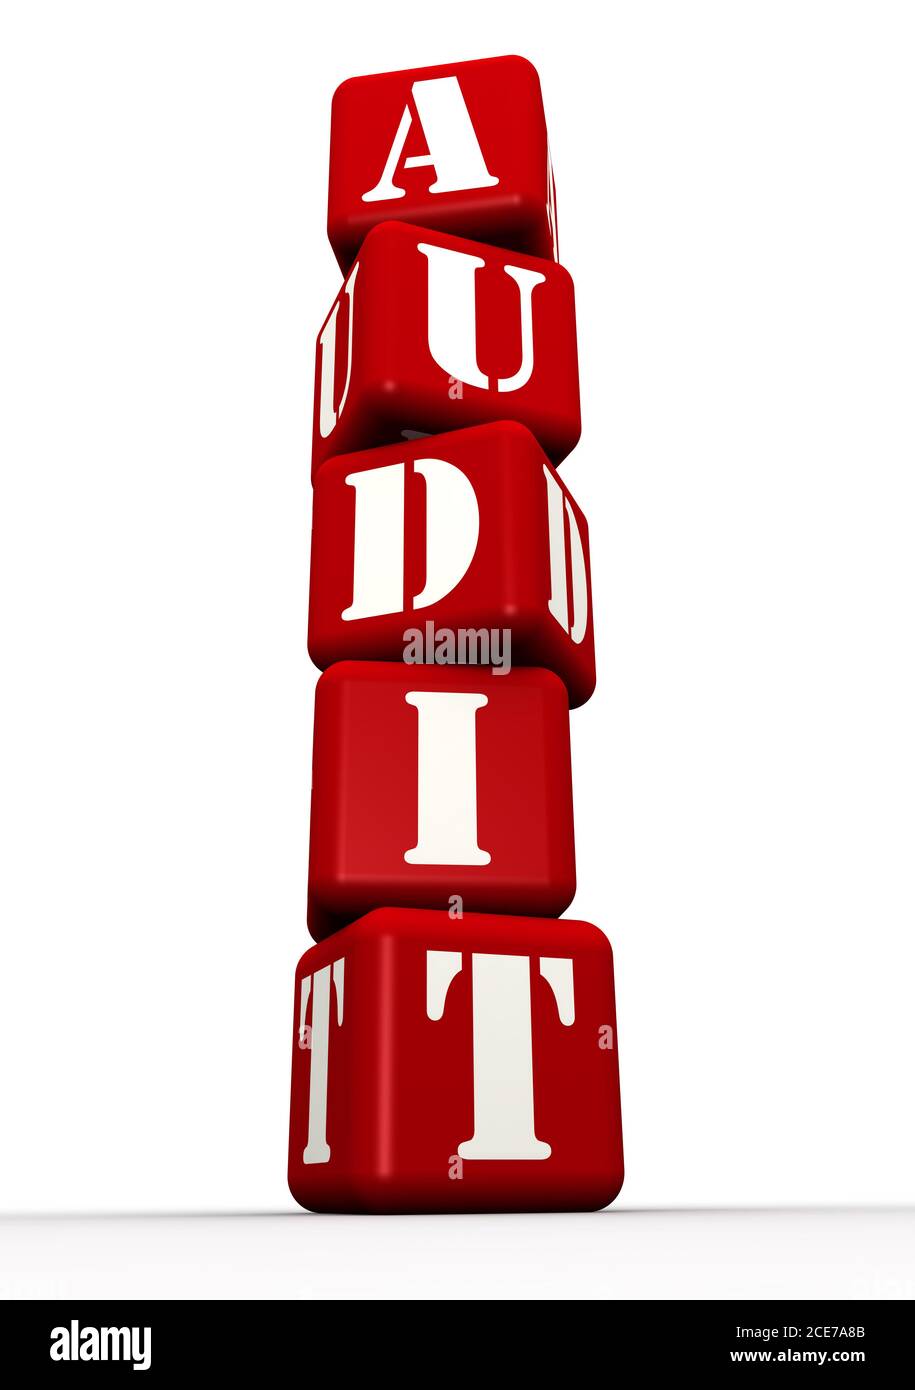 Verifica. Parola composta da cubi rossi. La parola AUDIT è fatta con cubi rossi sono etichettati con lettere. Illustrazione 3D Foto Stock